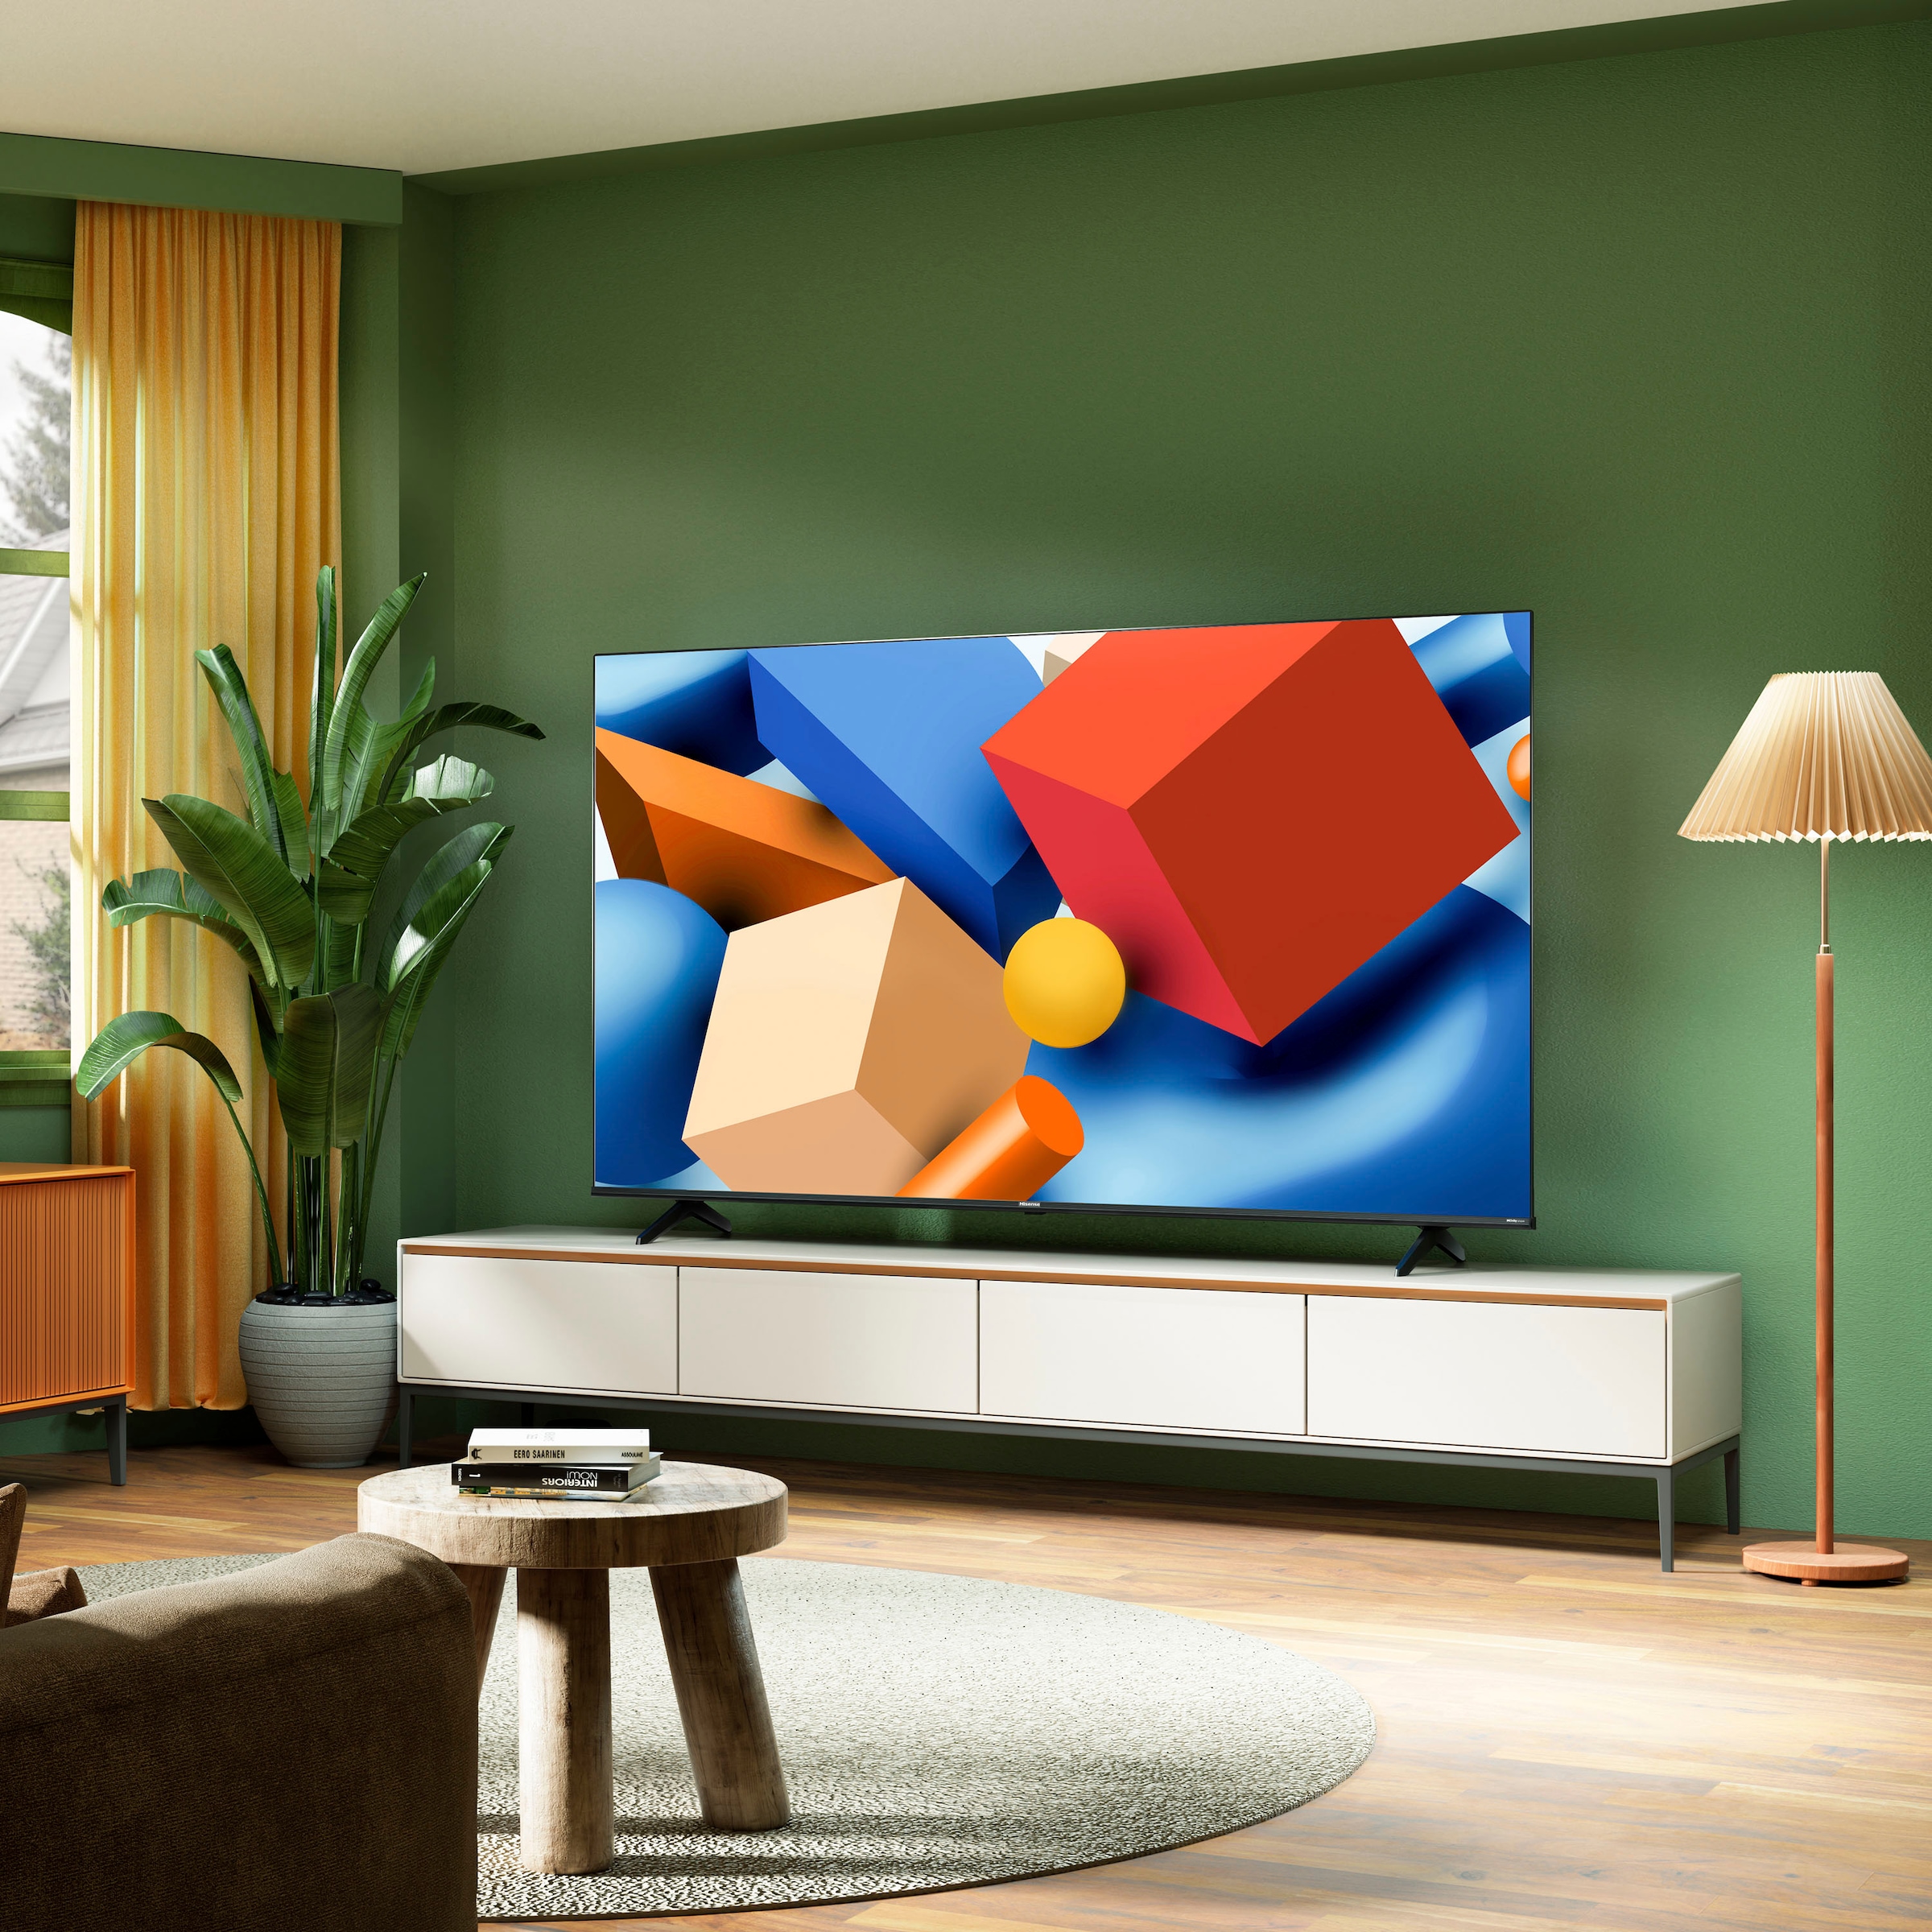 Hisense LED-Fernseher »Hisense 75E61KT«, 190 cm/75 Zoll, 4K Ultra HD, Smart-TV, Smart-TV, Dolby Vision, Triple Tuner DVB-C/S/S2/T/T2